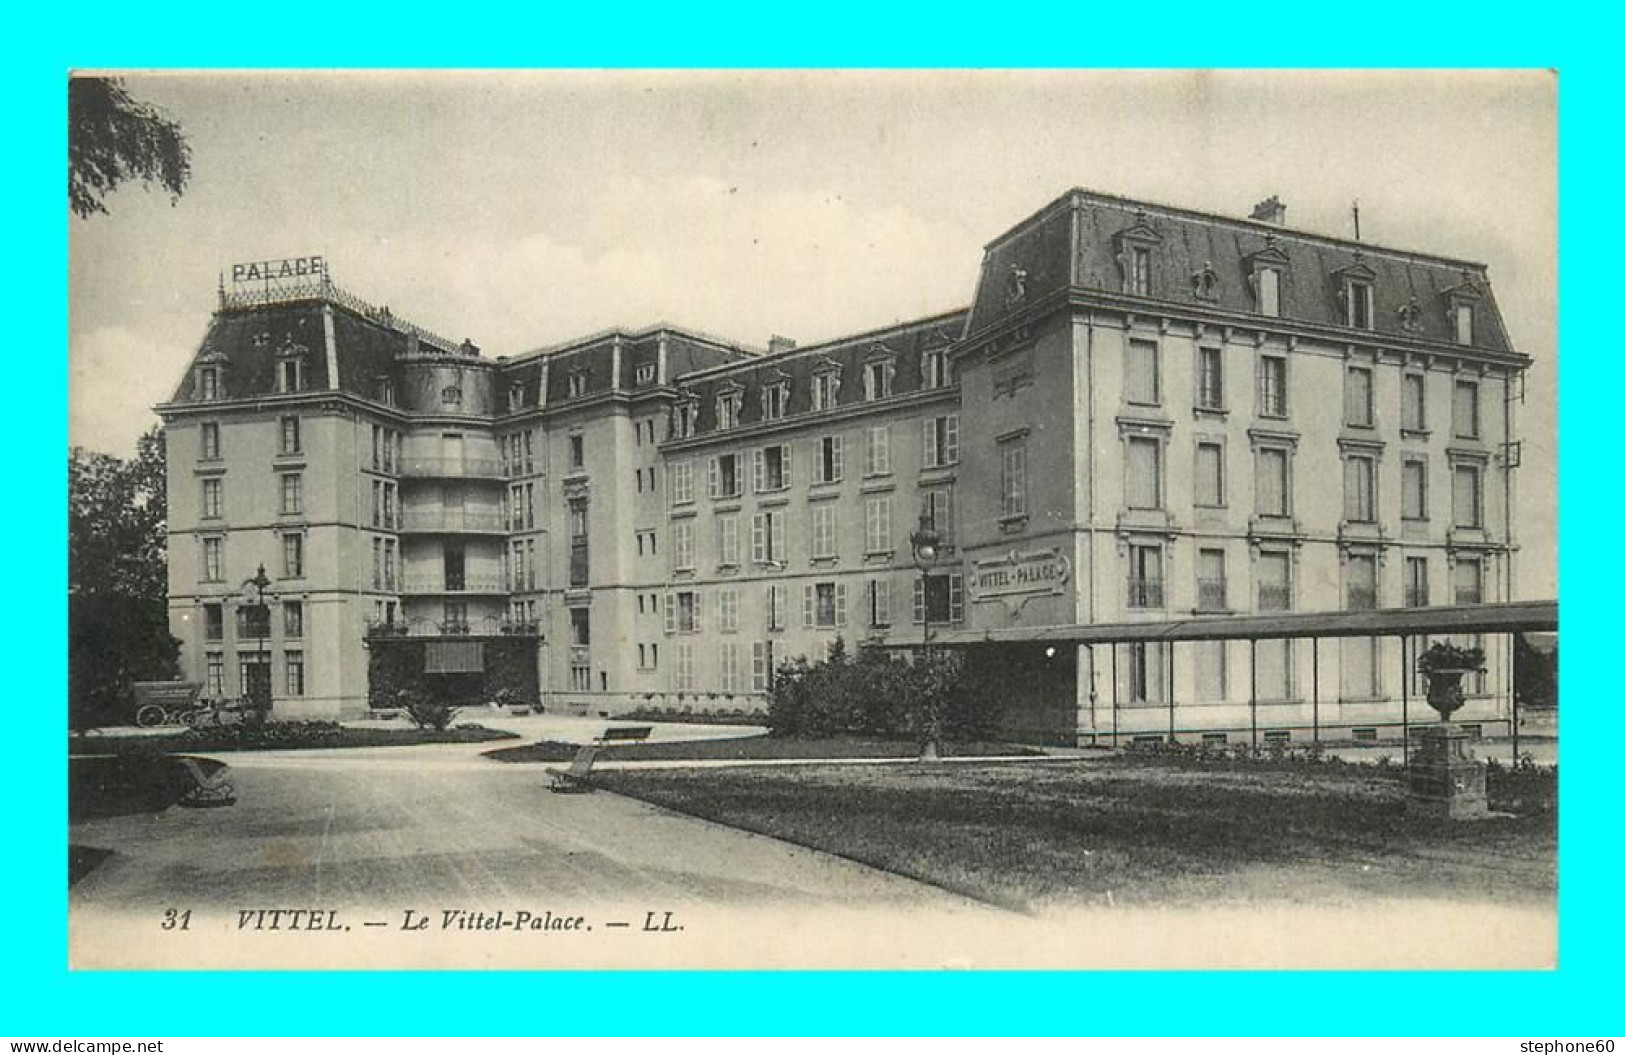 A898 / 289 88 - VITTEL Le Vittel Palace - Contrexeville